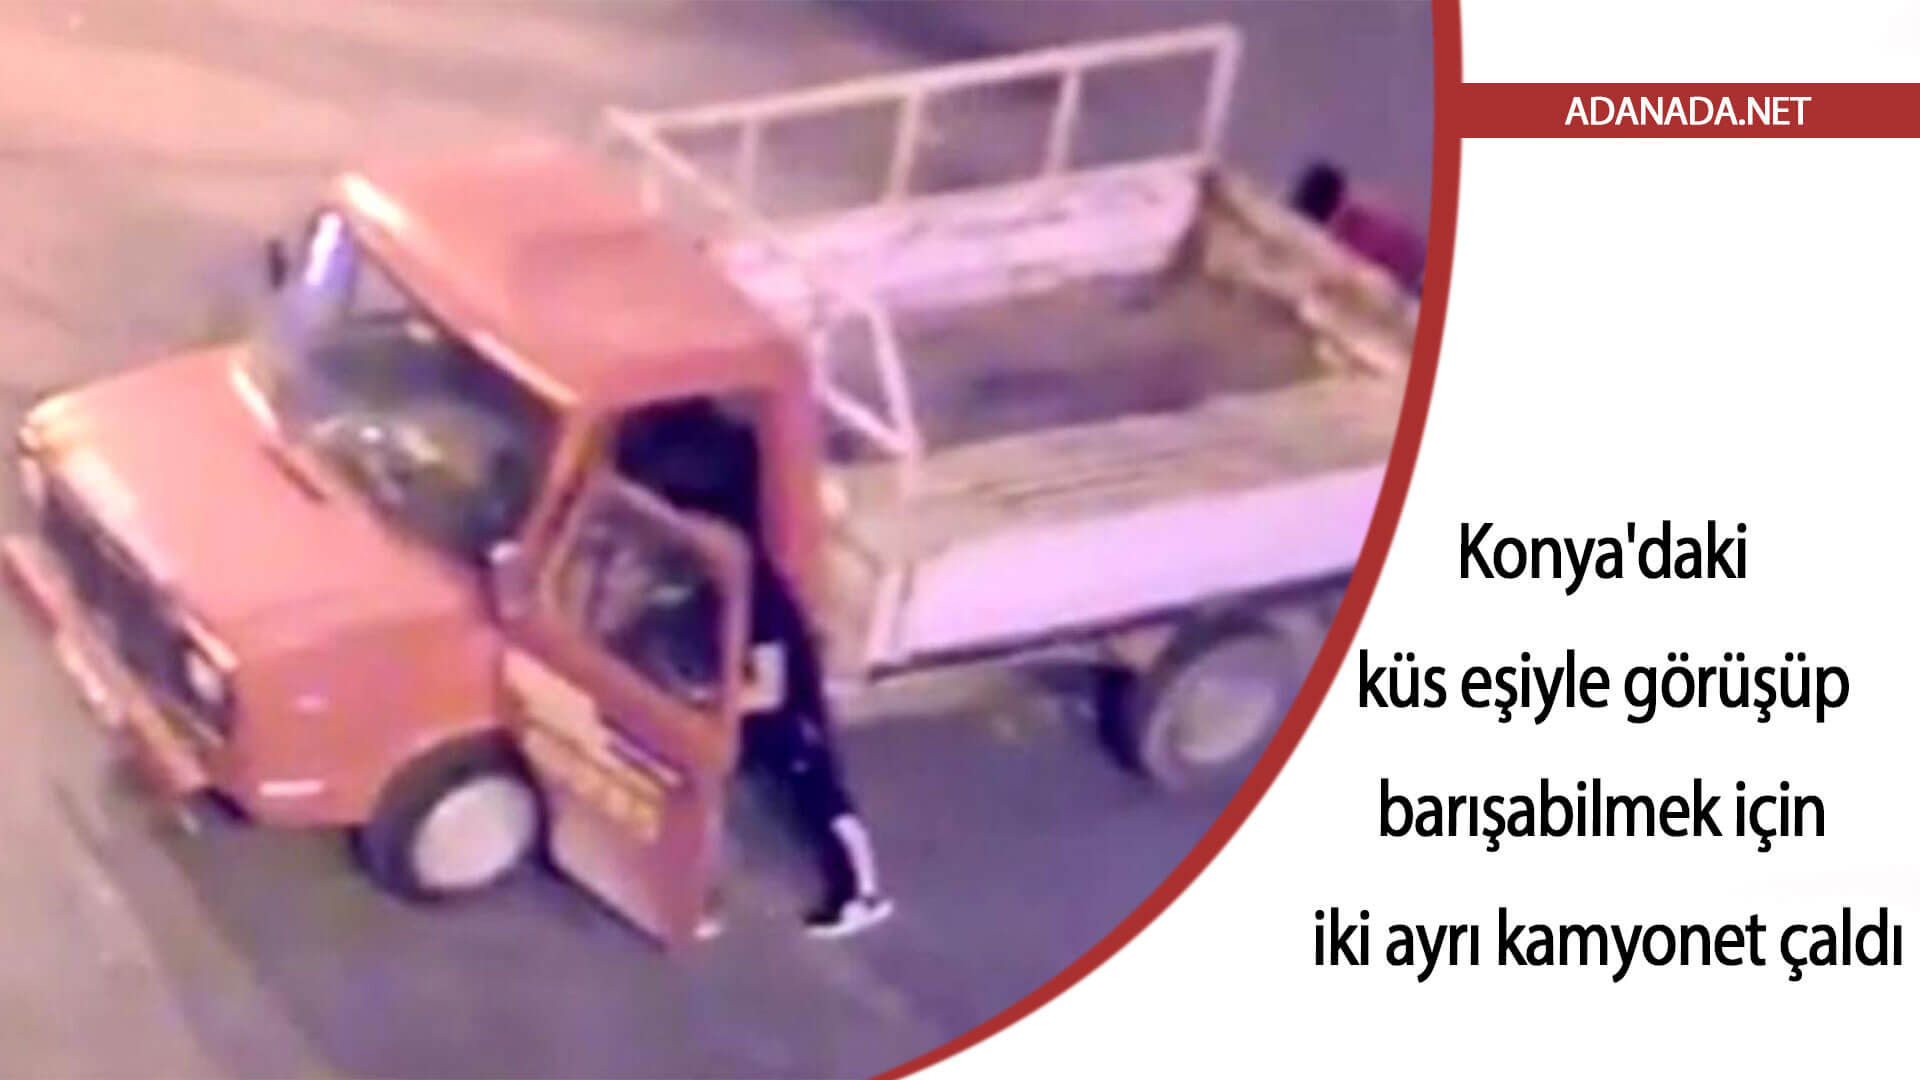 Konya’daki küs eşiyle görüşüp barışabilmek için iki ayrı kamyonet çaldı